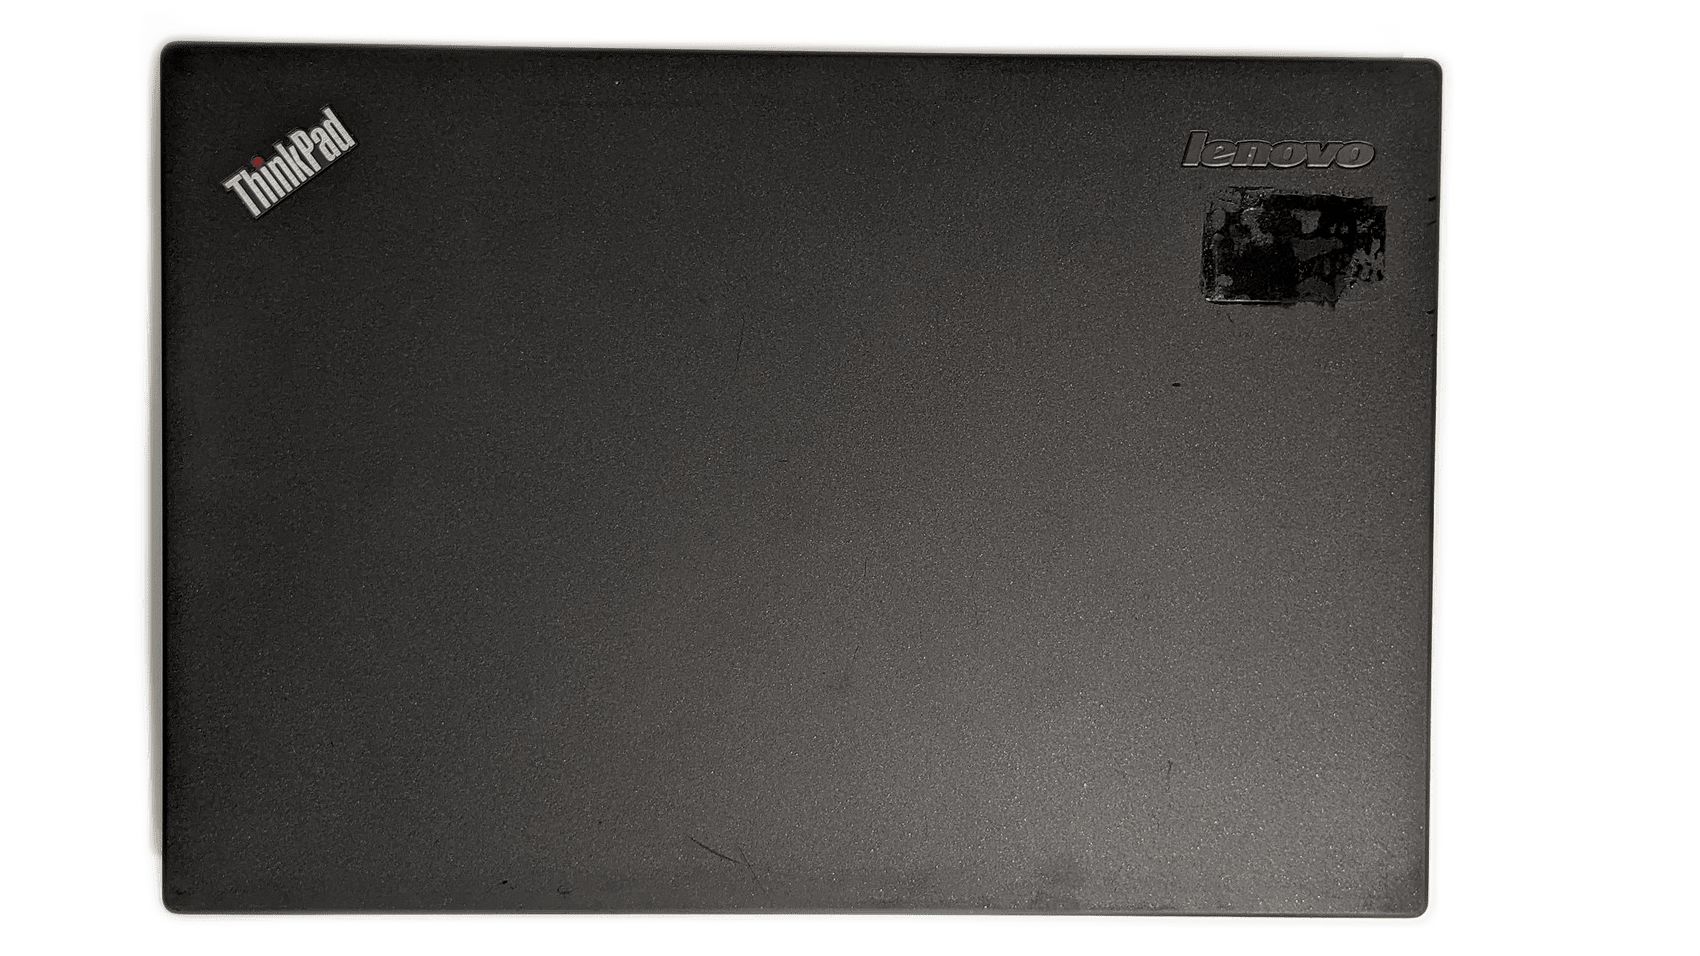 Lenovo ThinkPad X240 12.5" 1366x768 i5-4200U 8GB 120GB батерия 1 часа